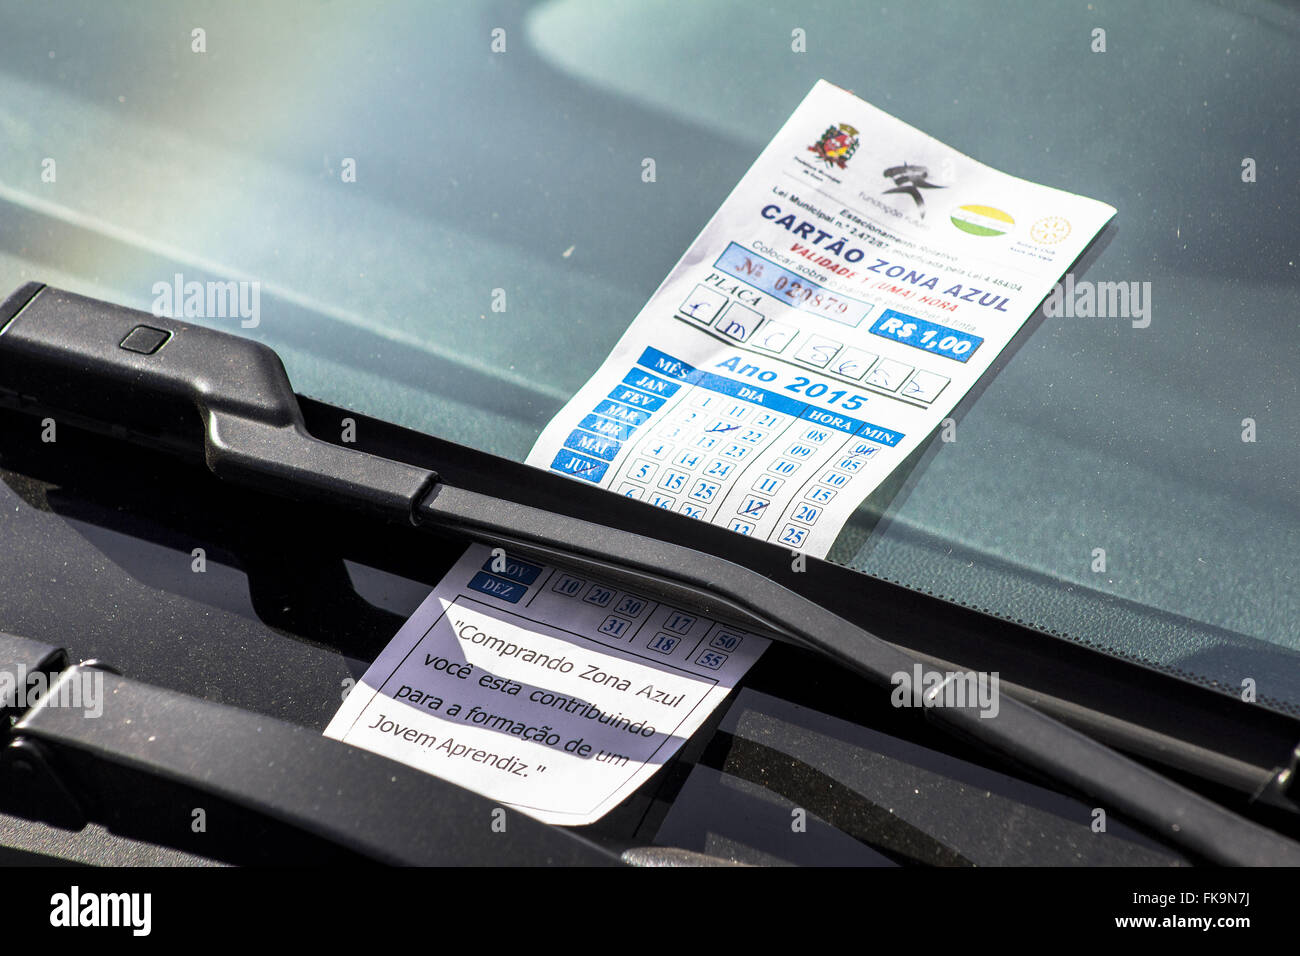 Cartão de estacionamento de zona azul no painel de veículo estacionado no Centro da Cidade Foto Stock